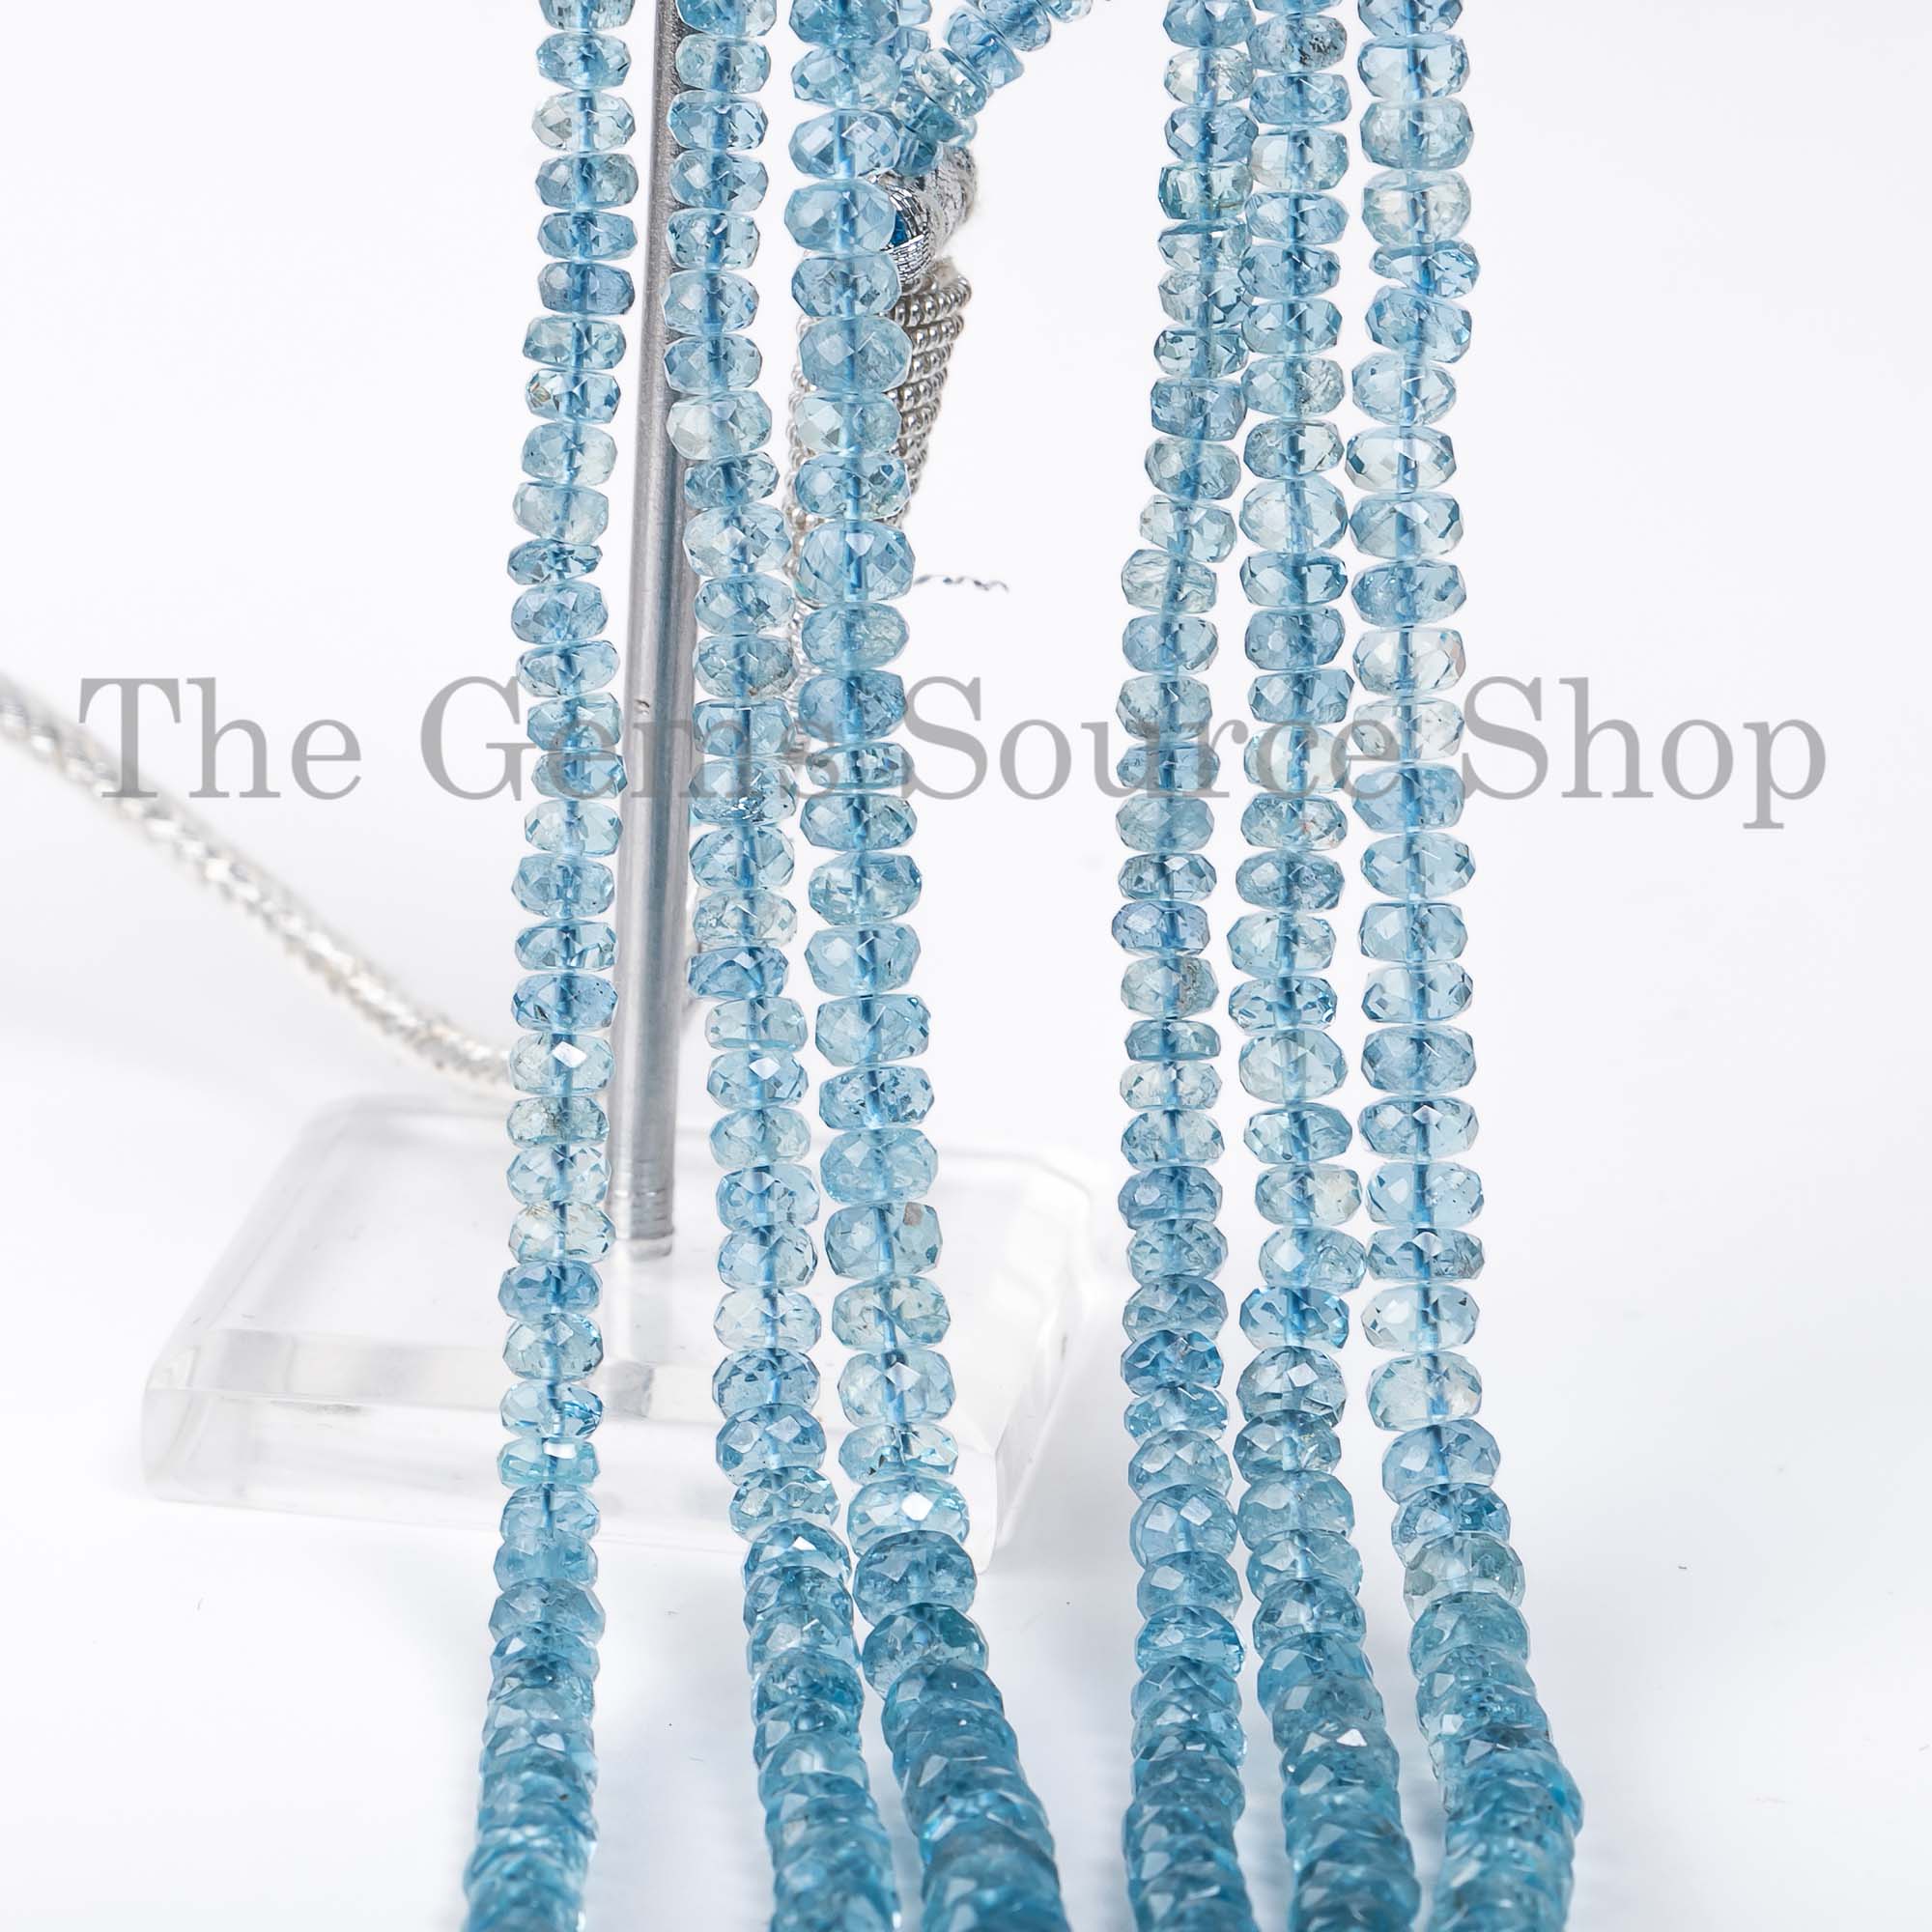 Santa Maria Aquamarine Beads Necklace, Aquamarine Faceted Rondelle Beads Necklace, Beaded Jewelry